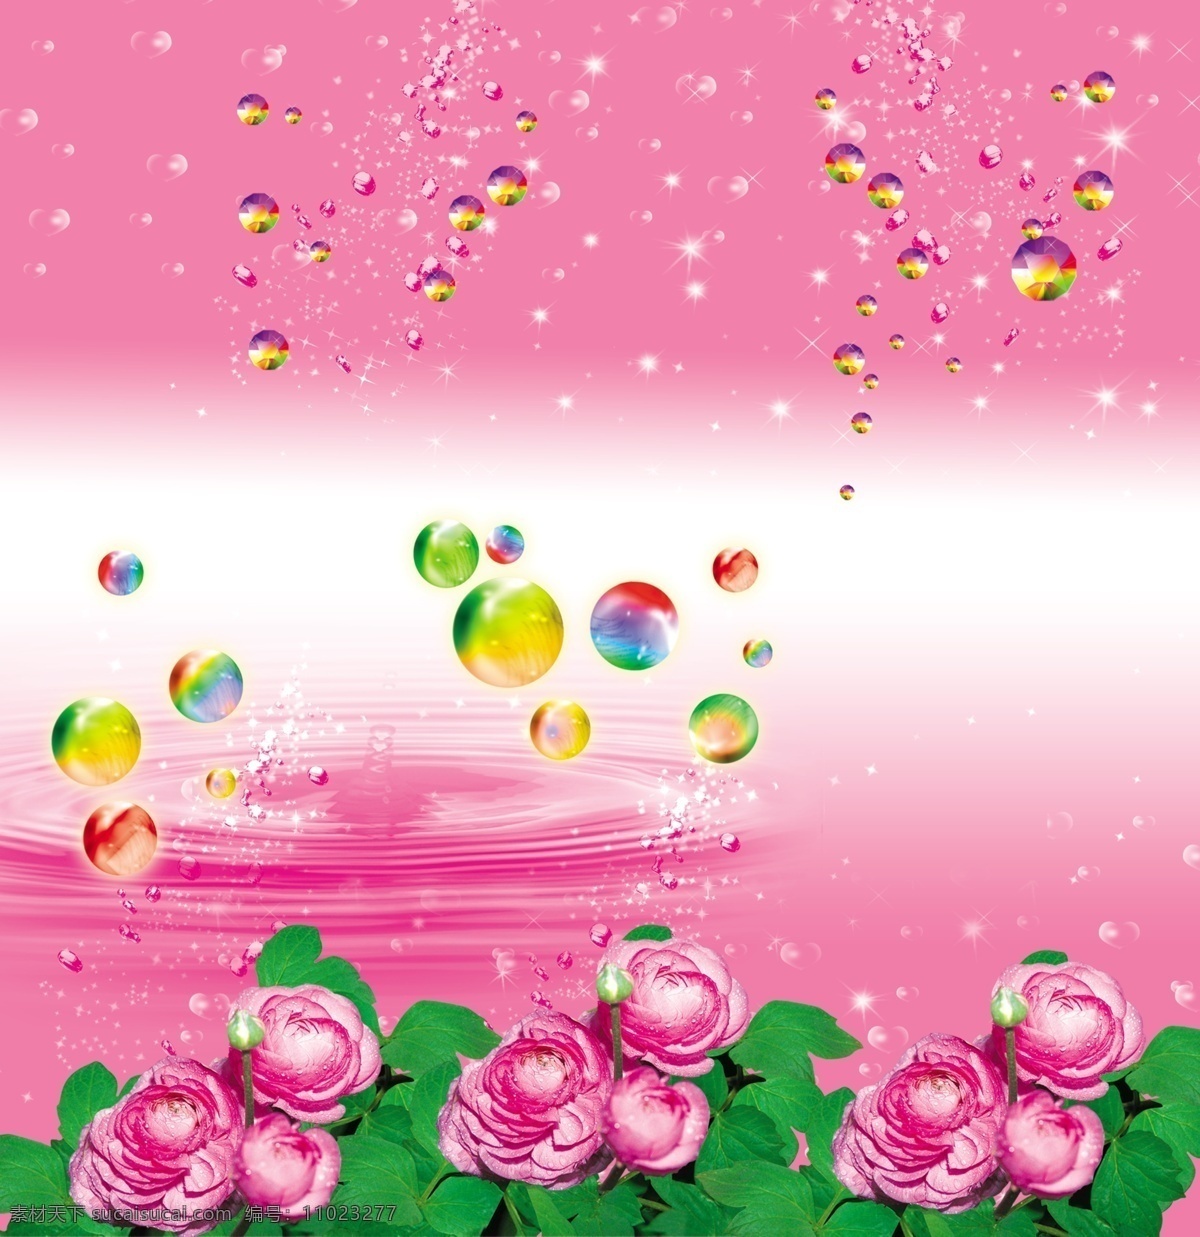 鲜花 水晶球 背景 绿色叶子 花蕾 水珠效果 粉红色背景